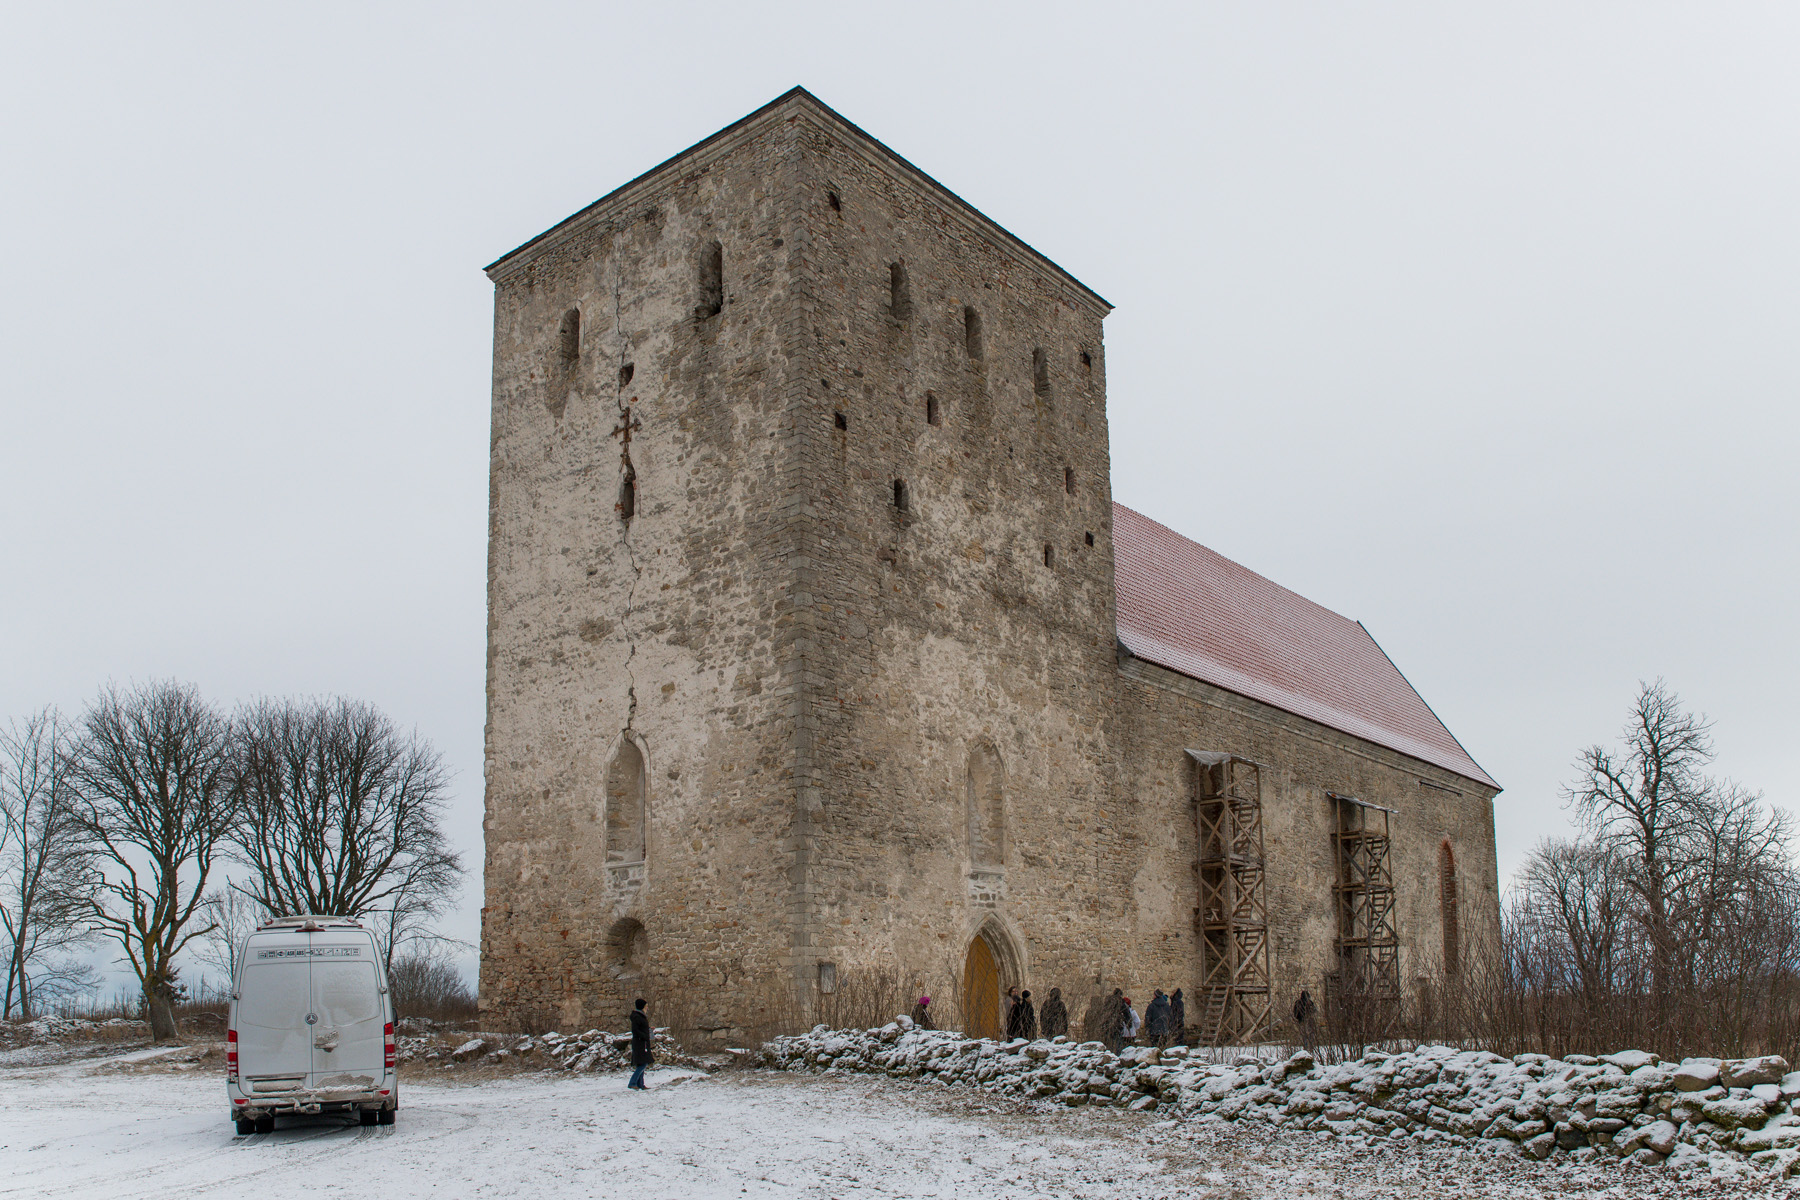 20160319-Saaremaa-260-Poide-kirik.jpg - 18.-20. märts 2016. Saaremaa ringreis. Pöide kirik